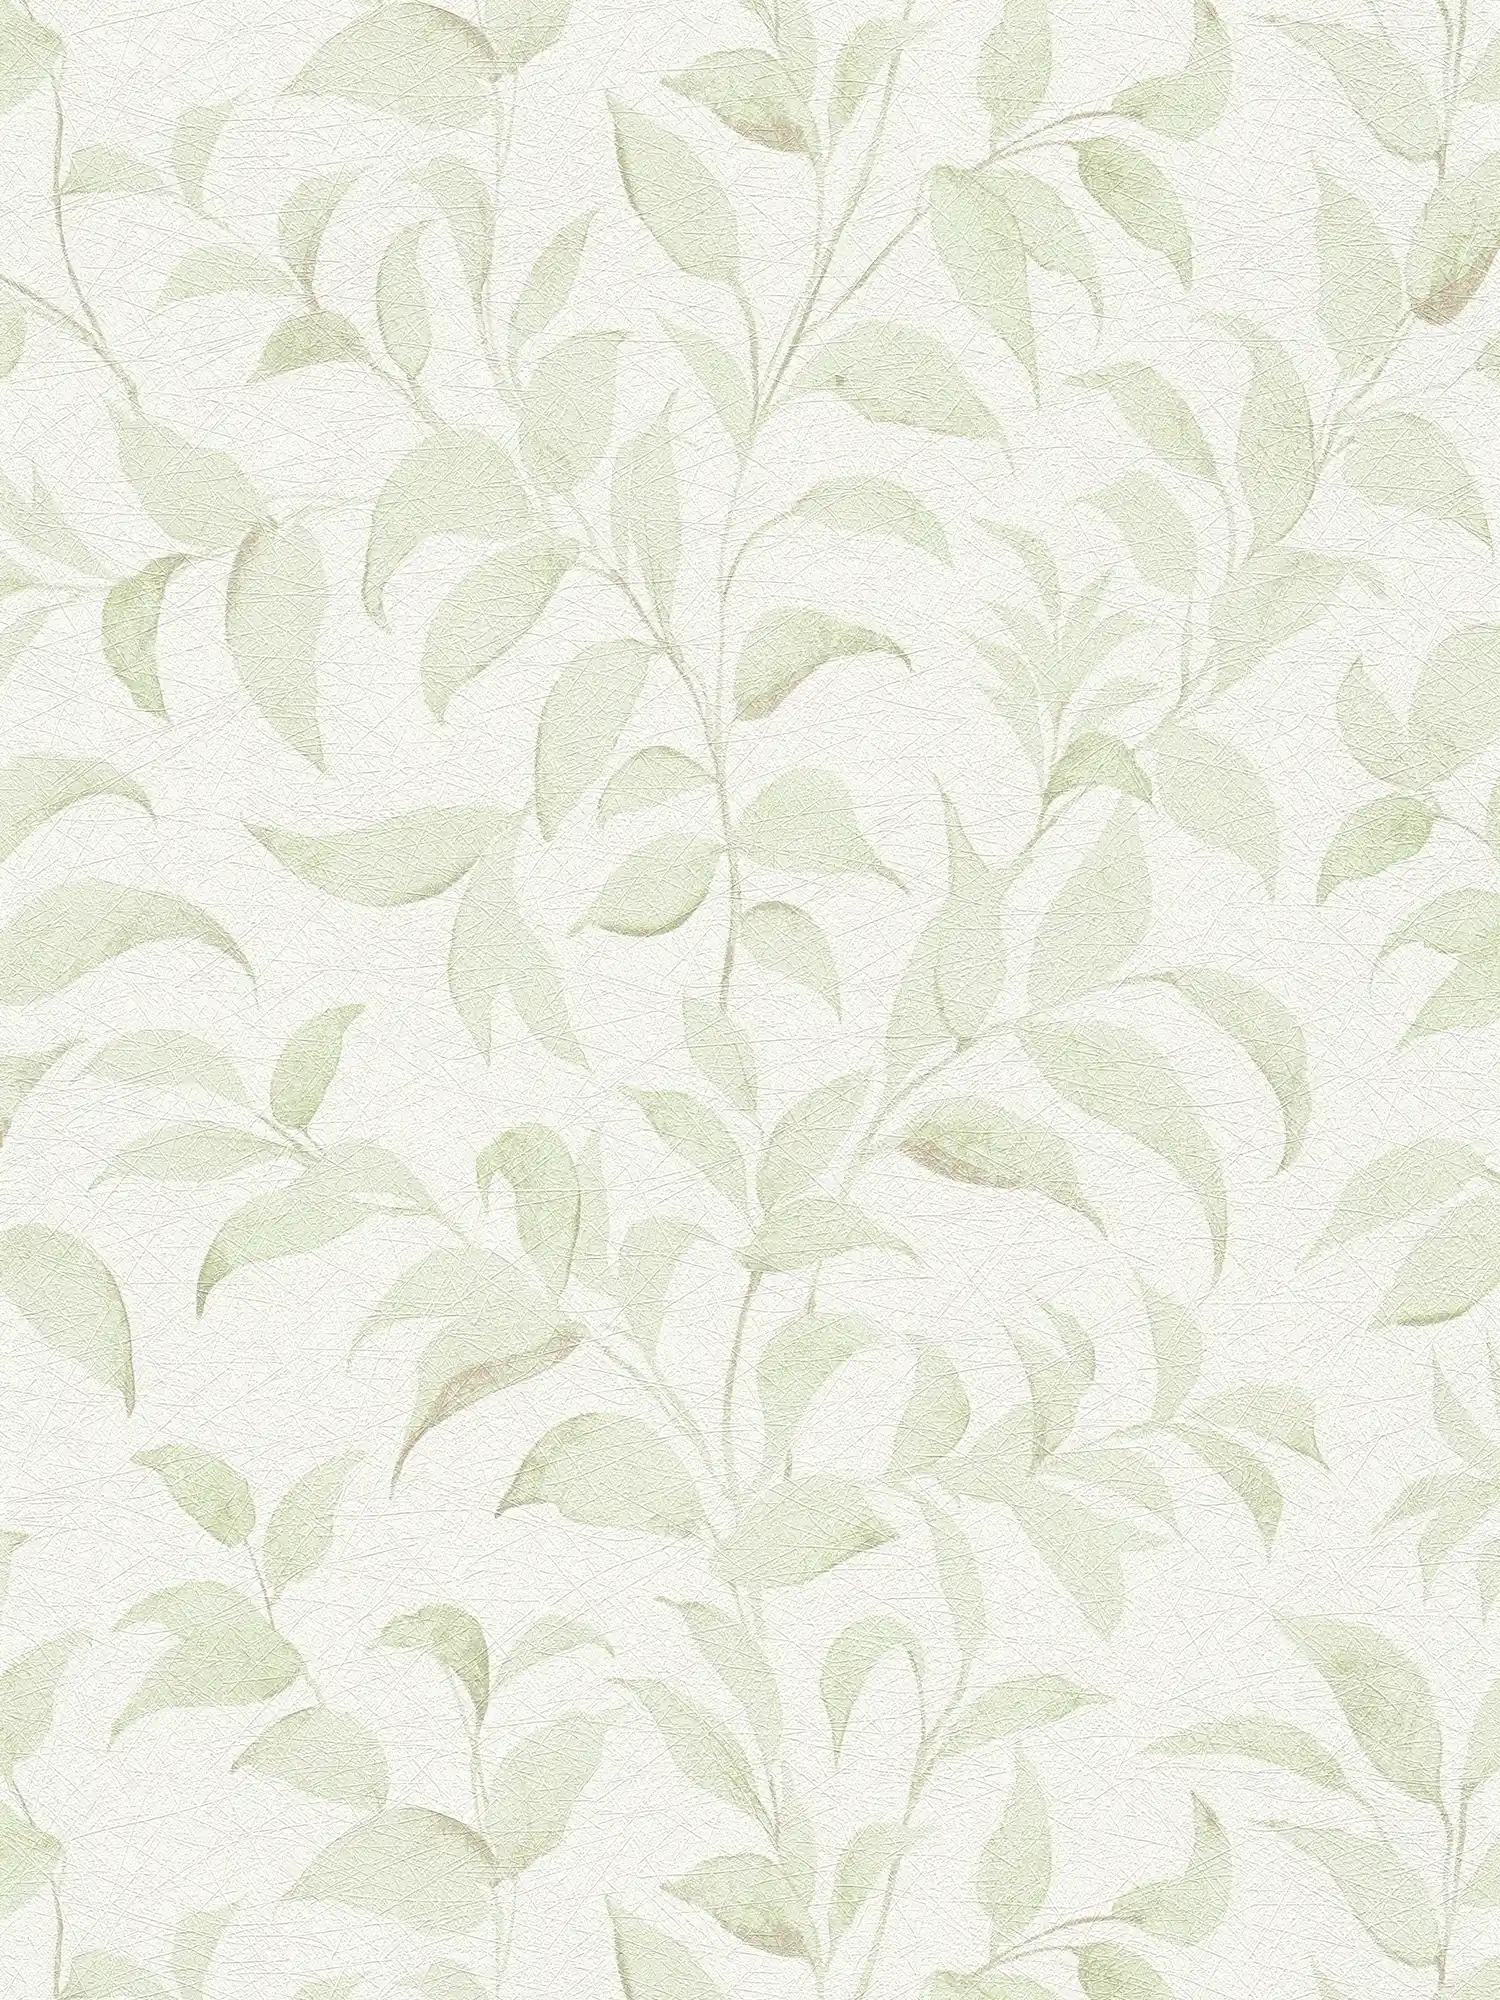 Blätter-Tapete floral schimmernd strukturiert – Weiß, Grün
